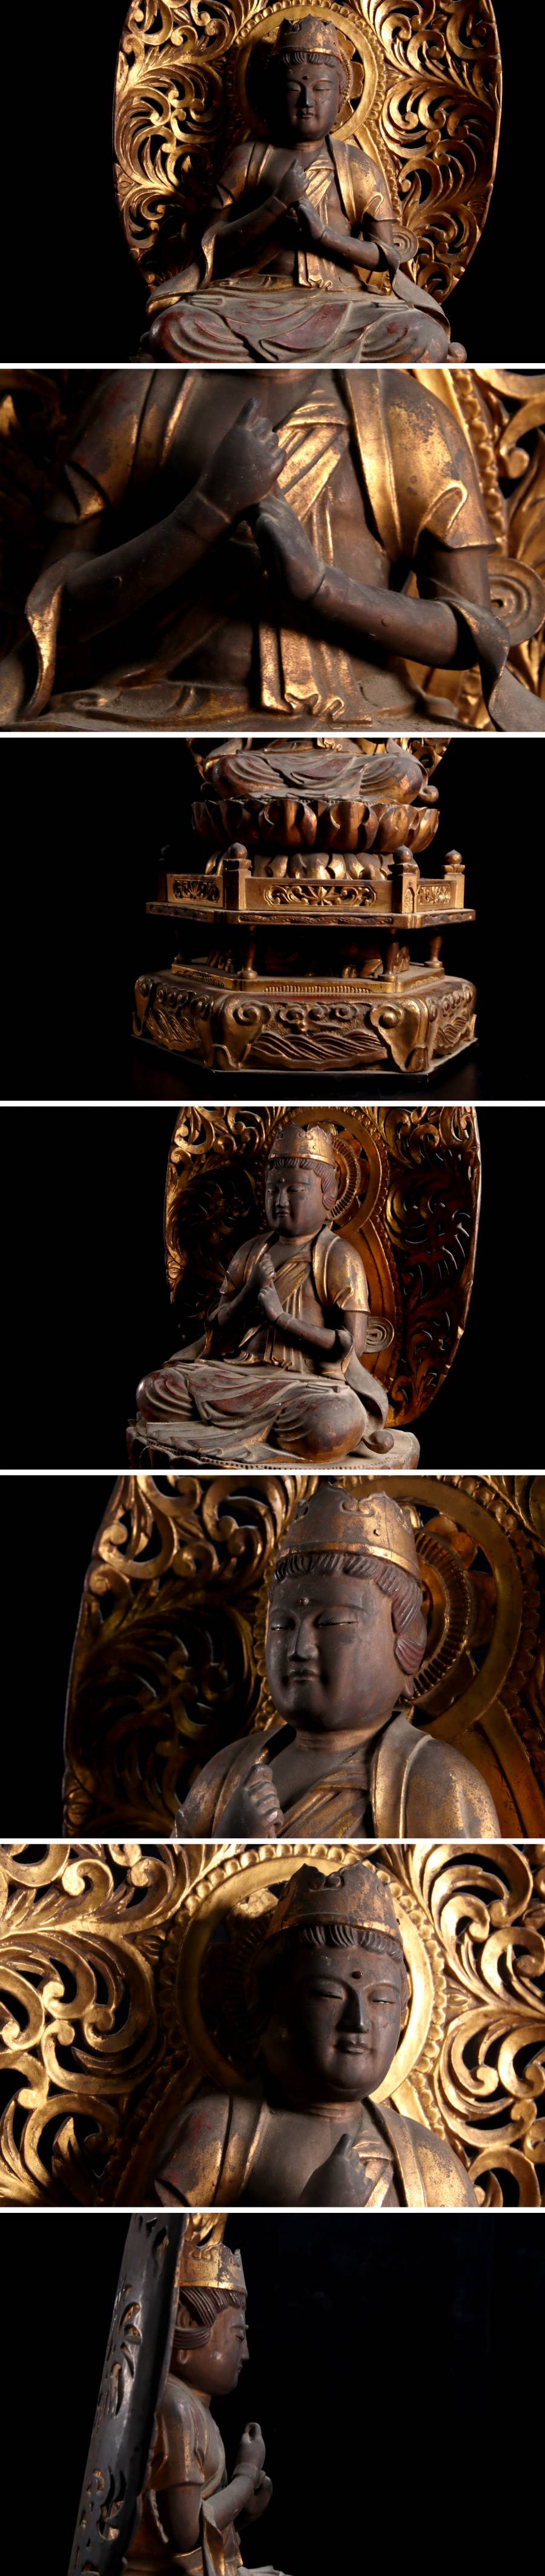 ◇錵◇ 仏教美術木彫玉眼大日如来坐像54cm 時代物仏像唐物骨董[S246.1